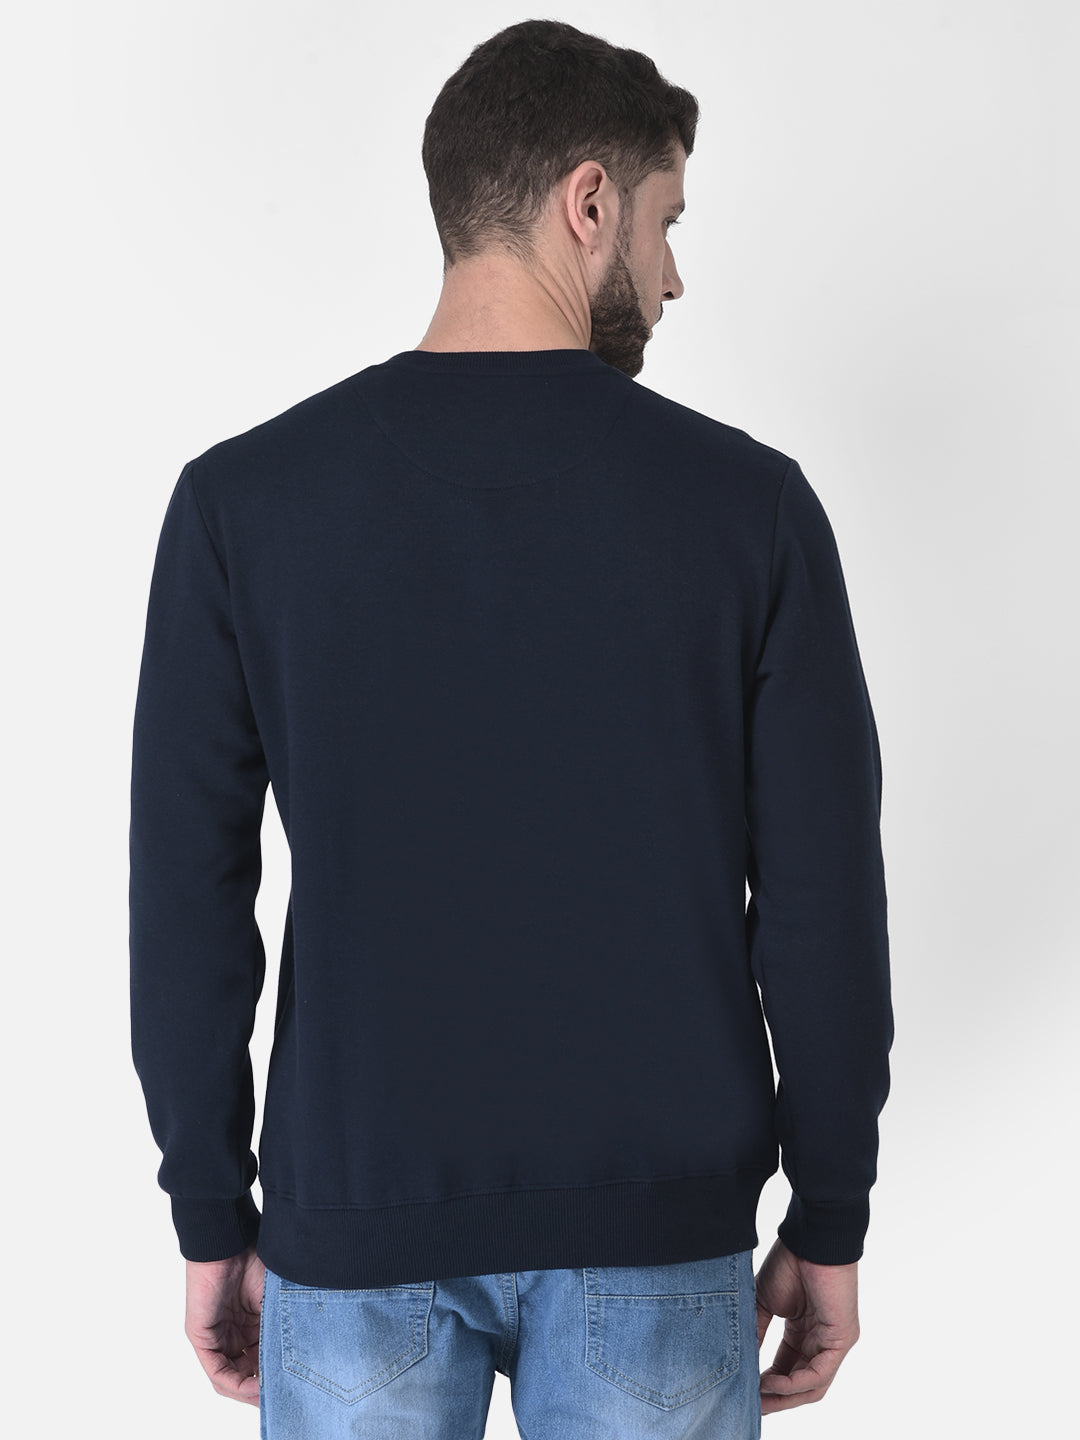 Cobb Navy Blue Printed Round Neck Sweatshirt